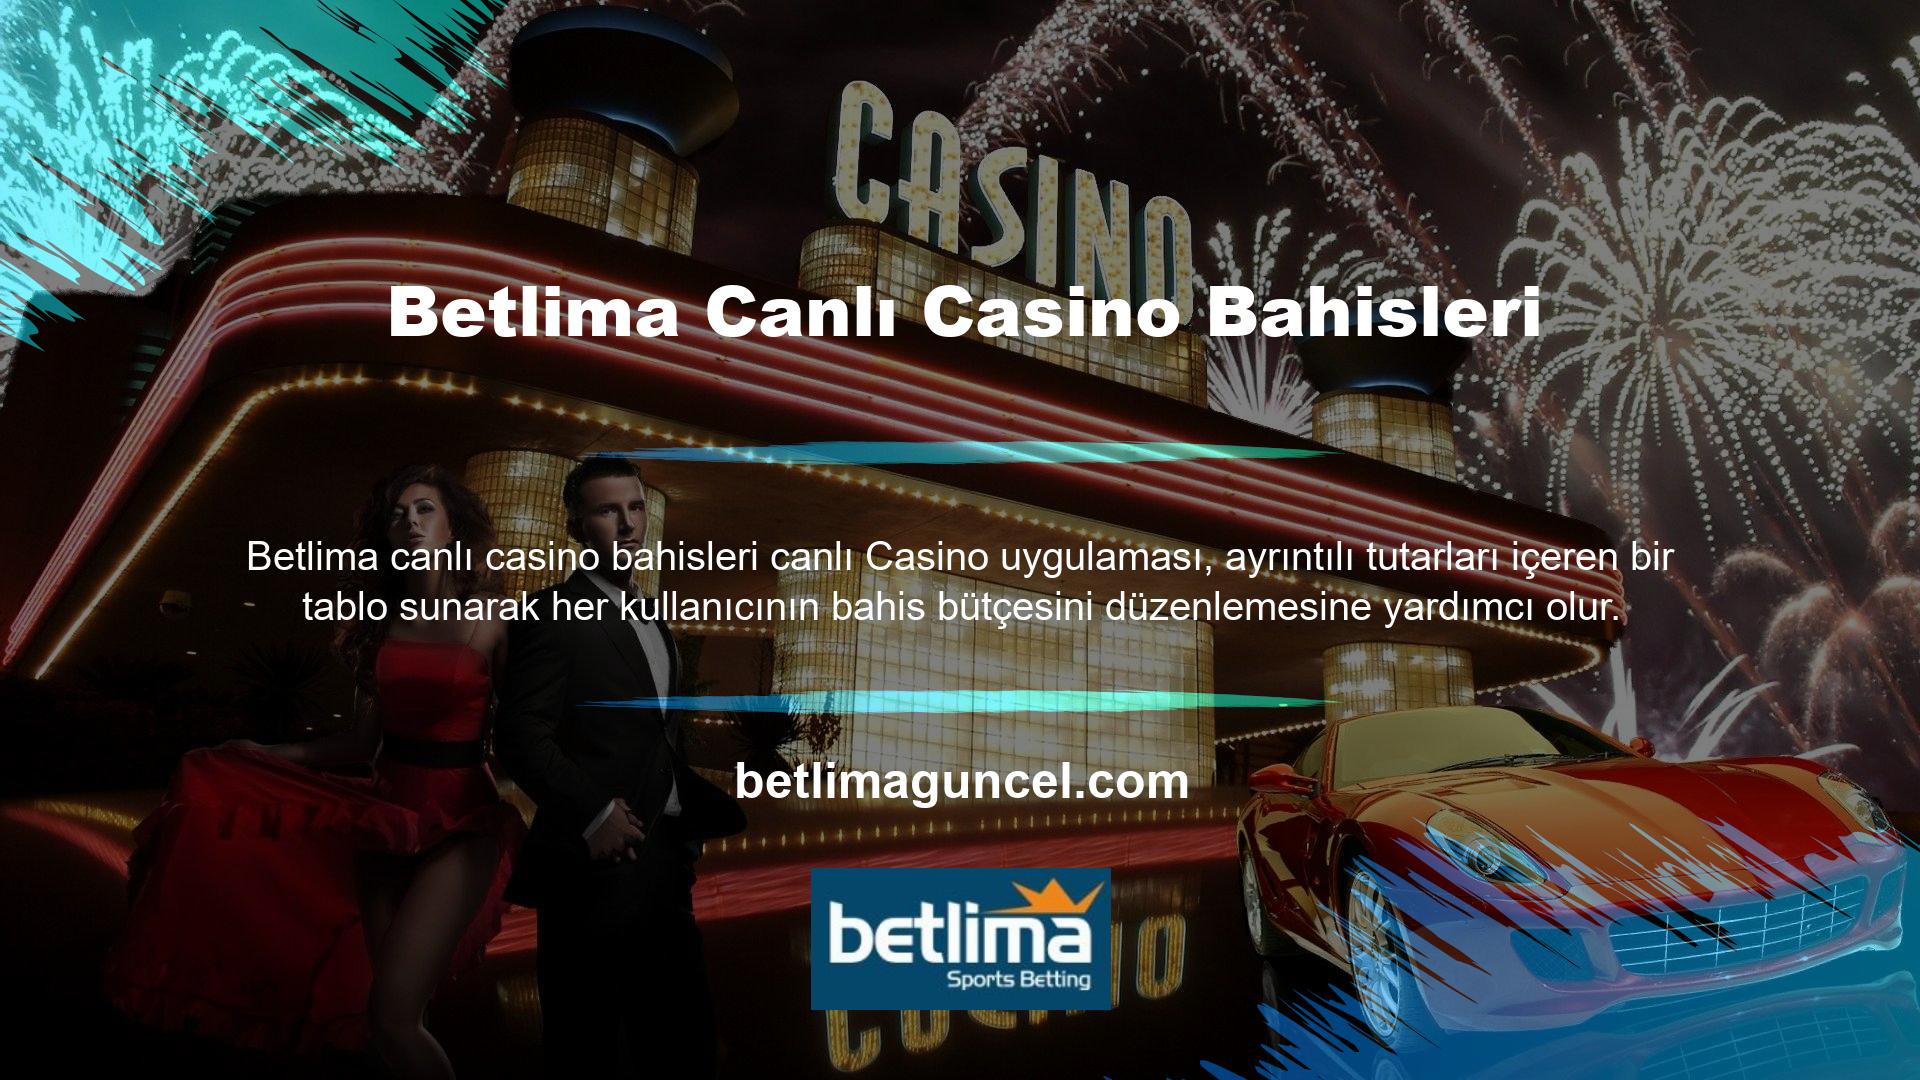 Betlima Canlı Casino uygulamasında tanımlanan bahis kategorilerinden bazıları şunlardır: Blackjack, rulet ve bakara gibi başka seçenekler de vardır